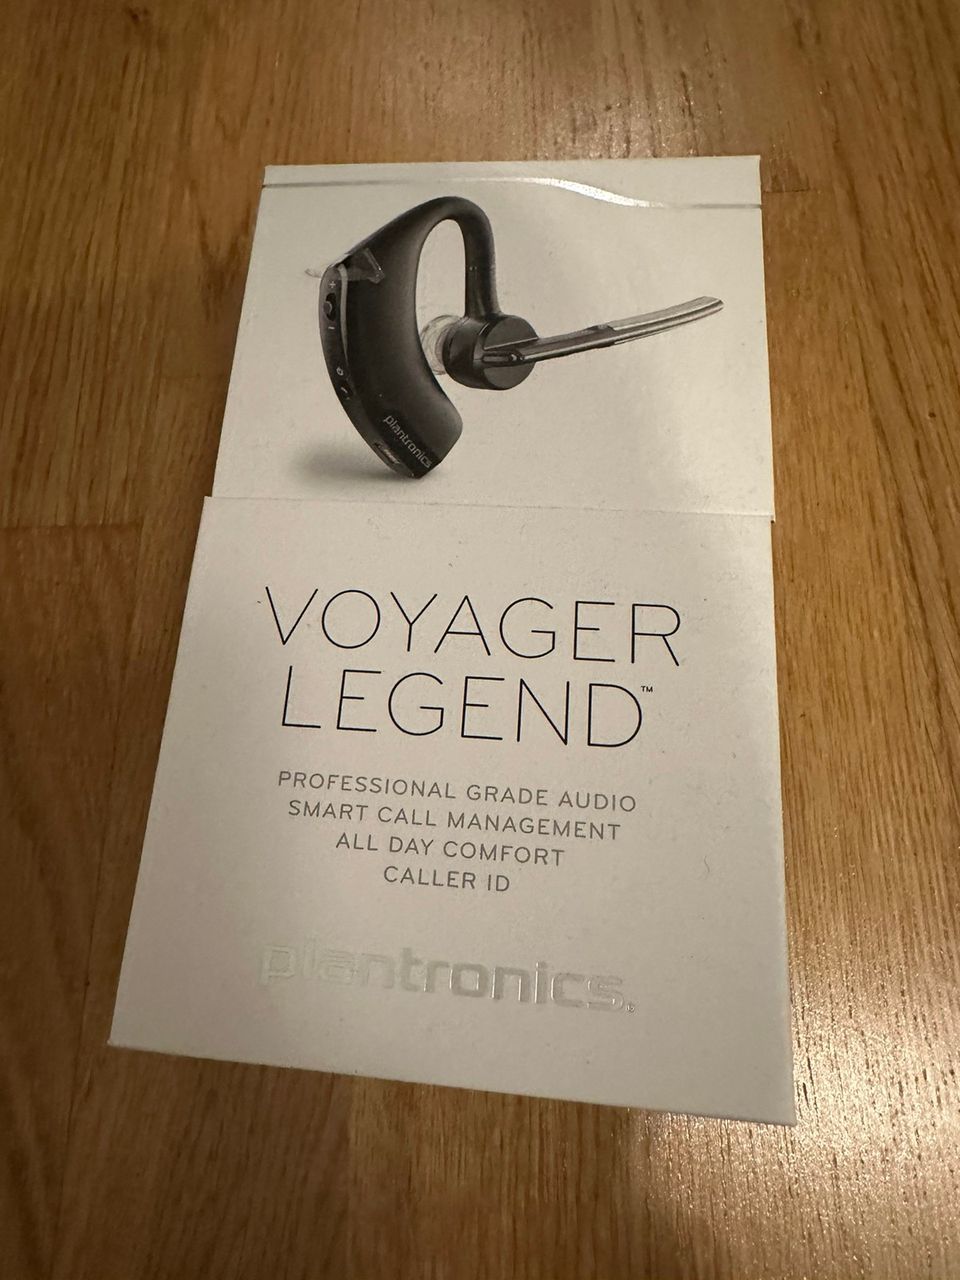 Voyager legend